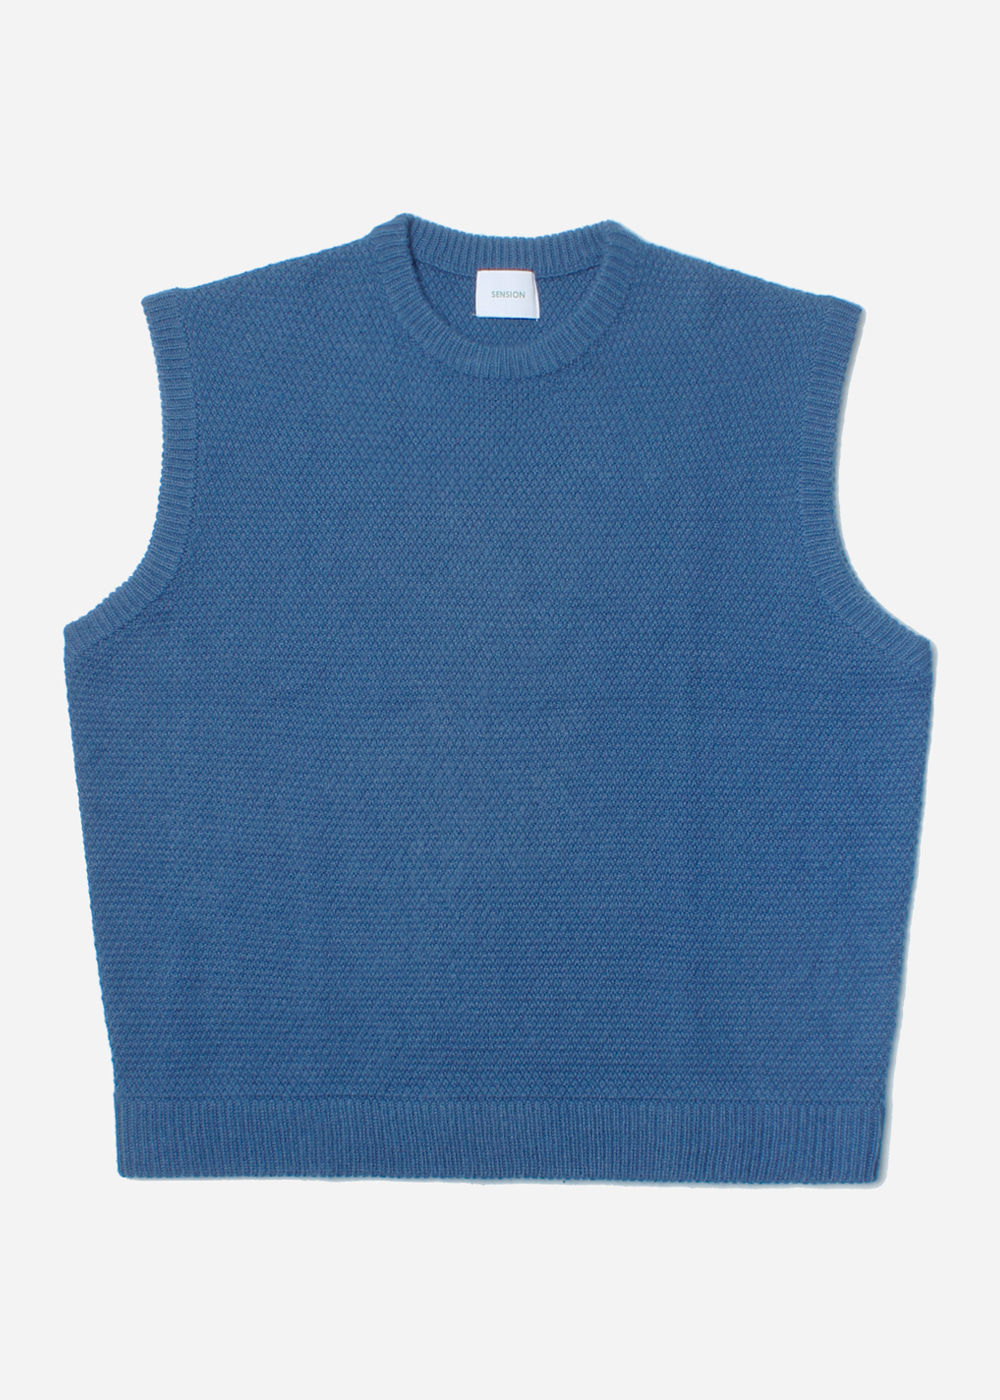 SENSION’over fit’ wool knit vest